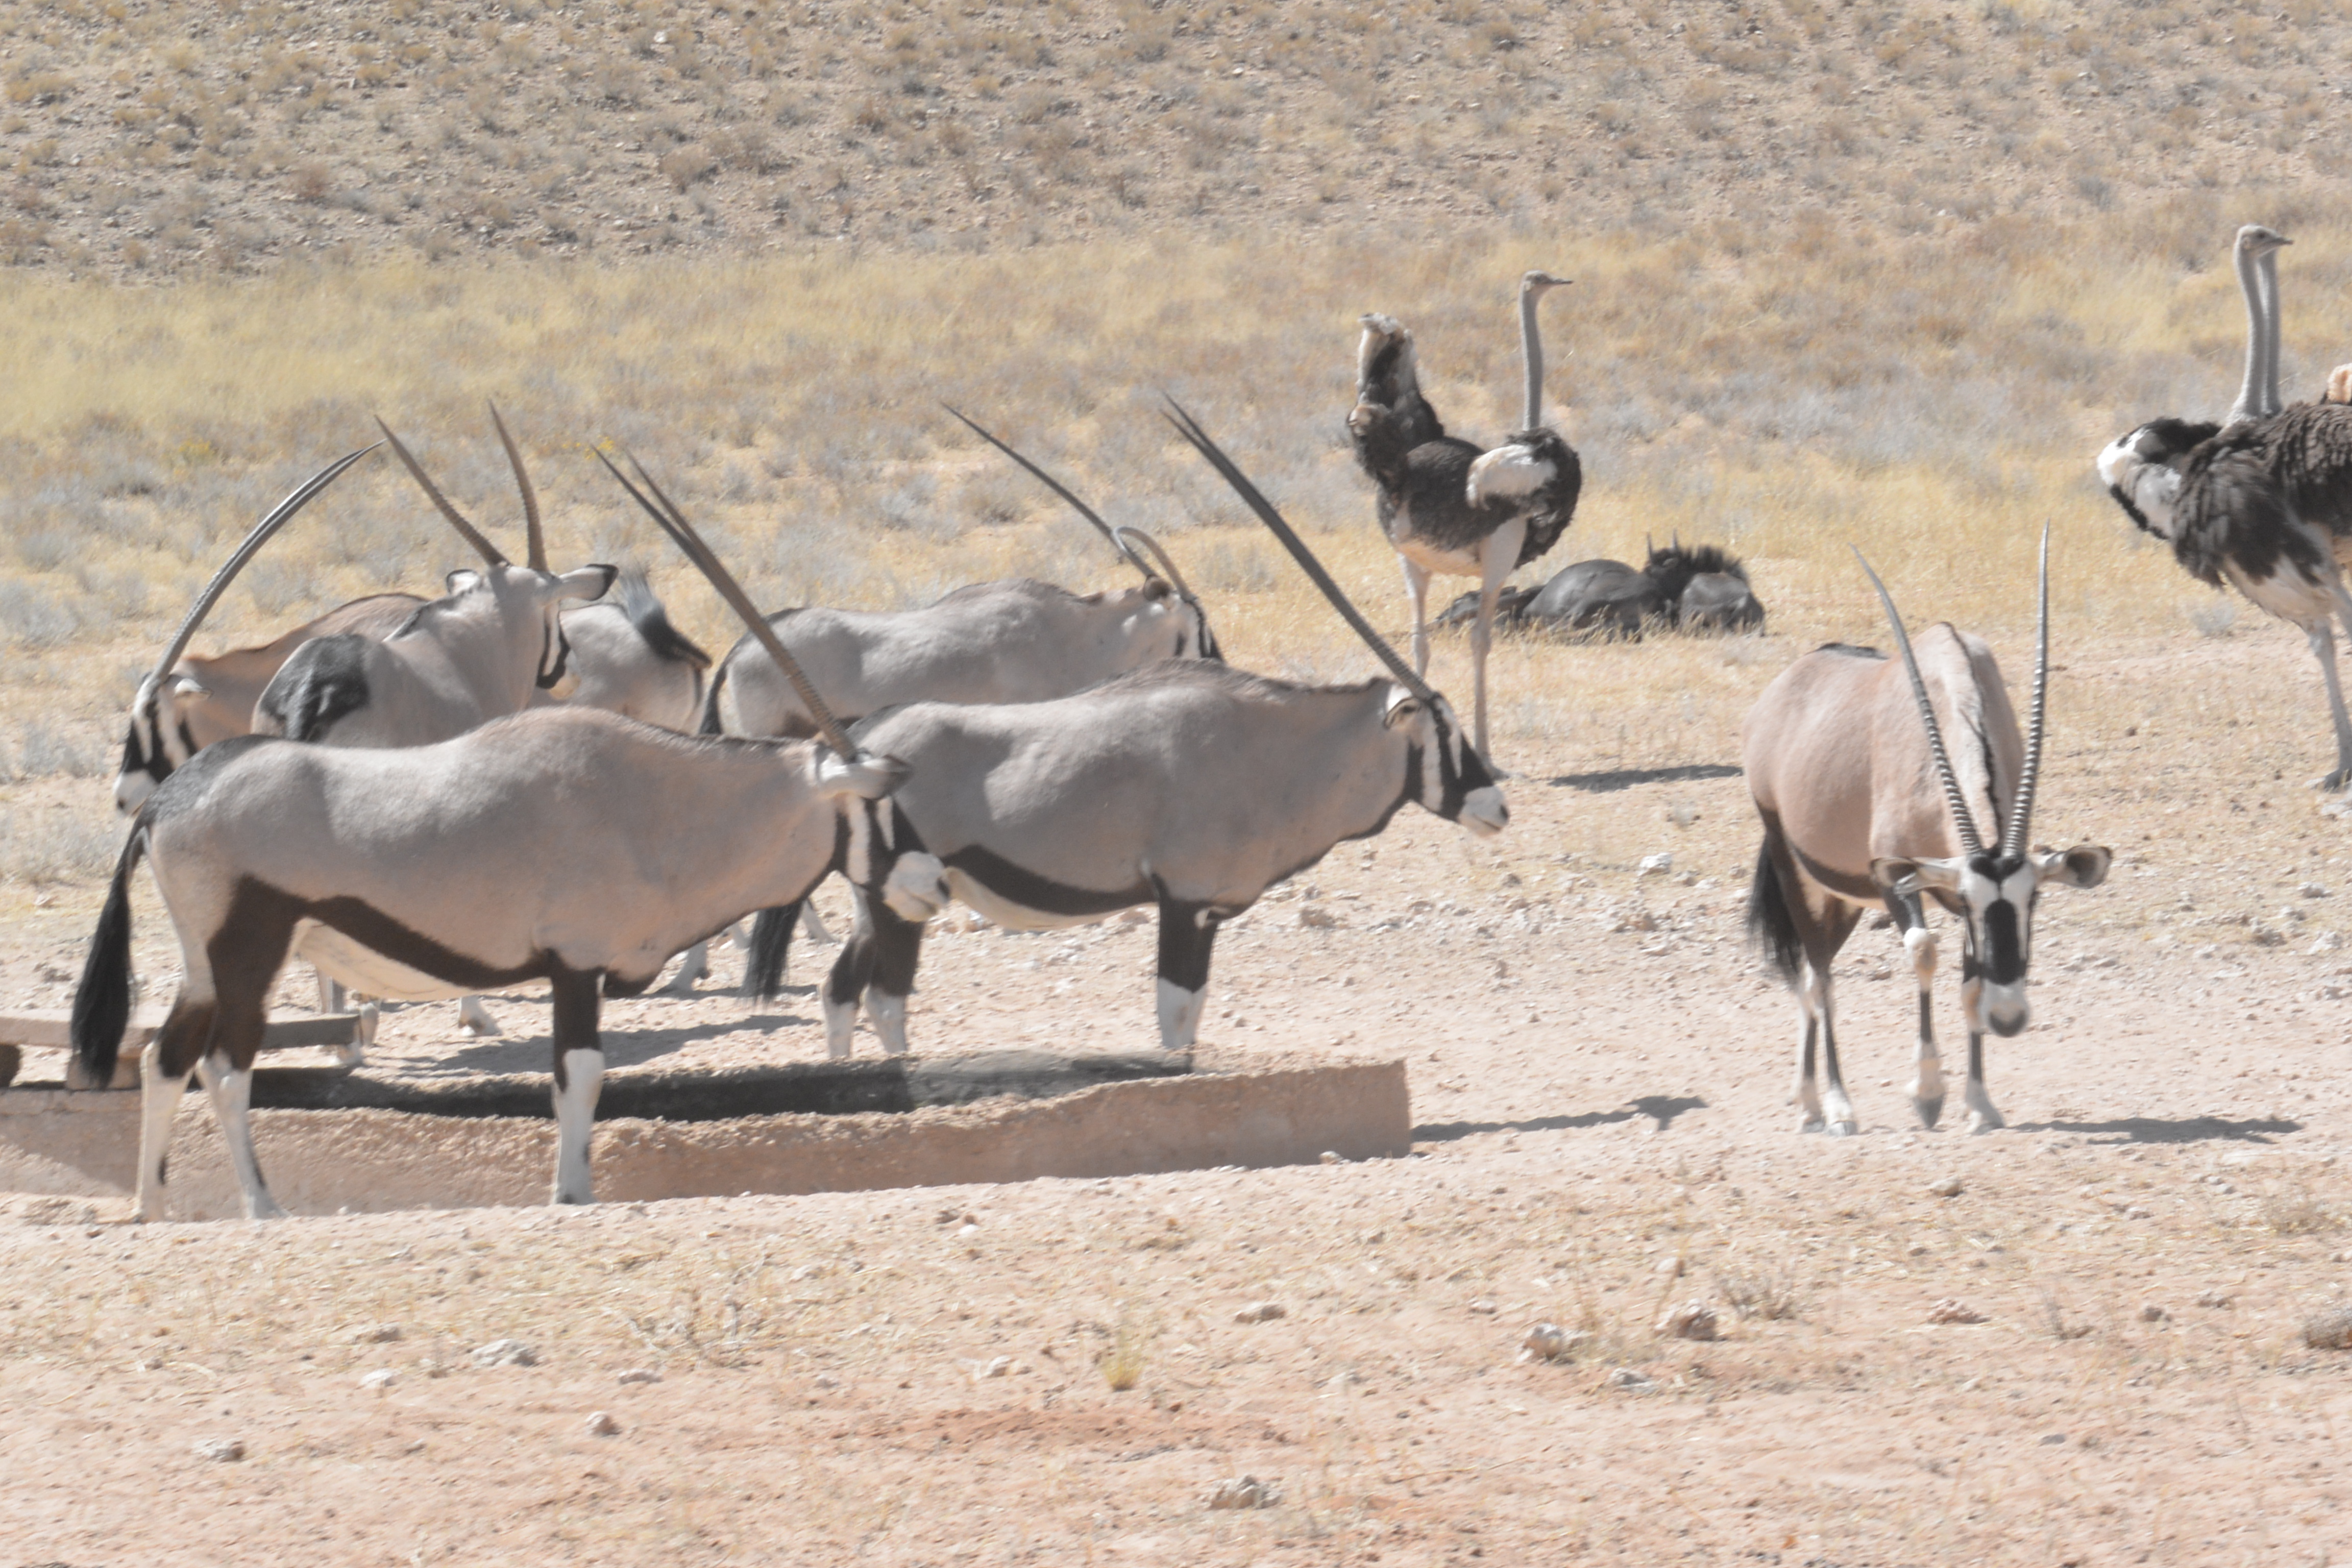 VIDEO: Safari in the Kalahari